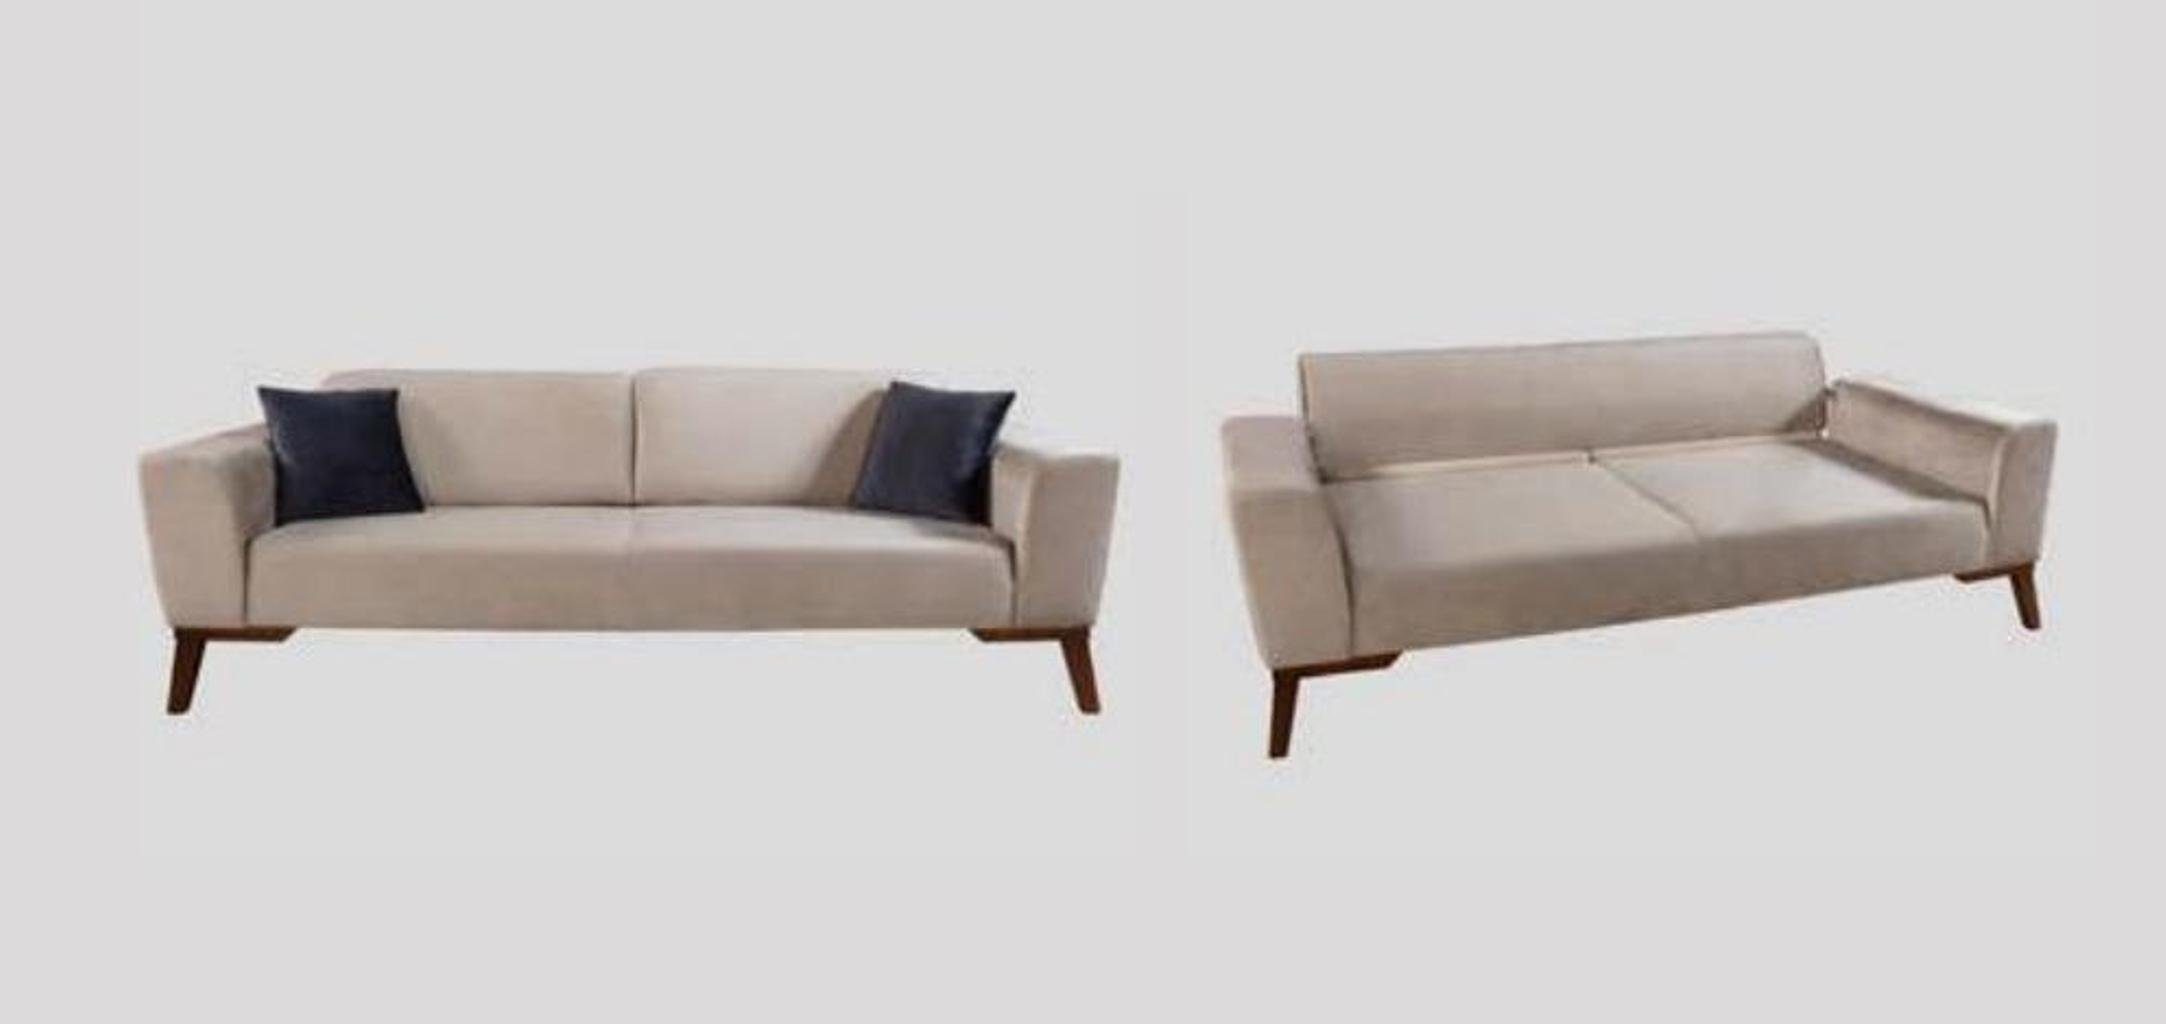 Moderne Design in Europe Sofa JVmoebel Couch Wohnzimmer Sofa Beige, Dreisitzer Made